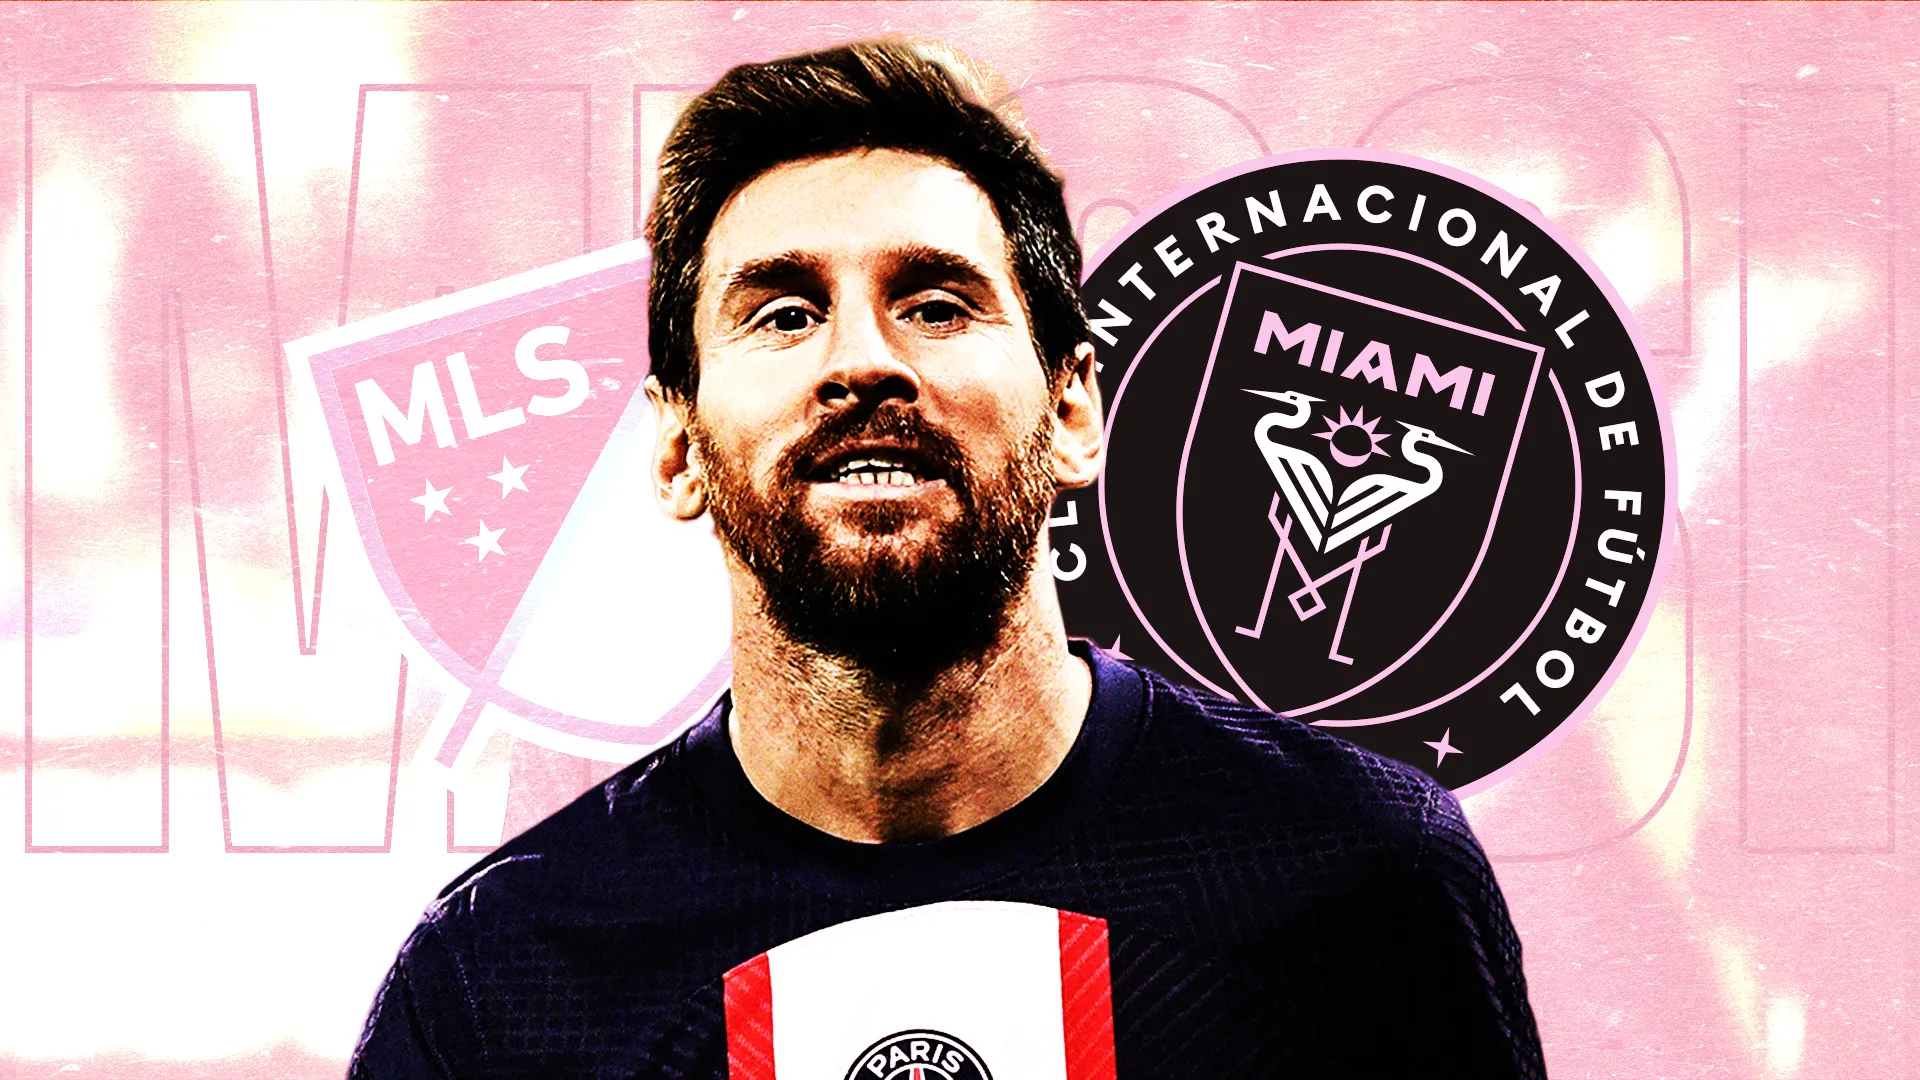 Der Messi-Effekt auf dem Instagram-Account von Inter Miami ist wild